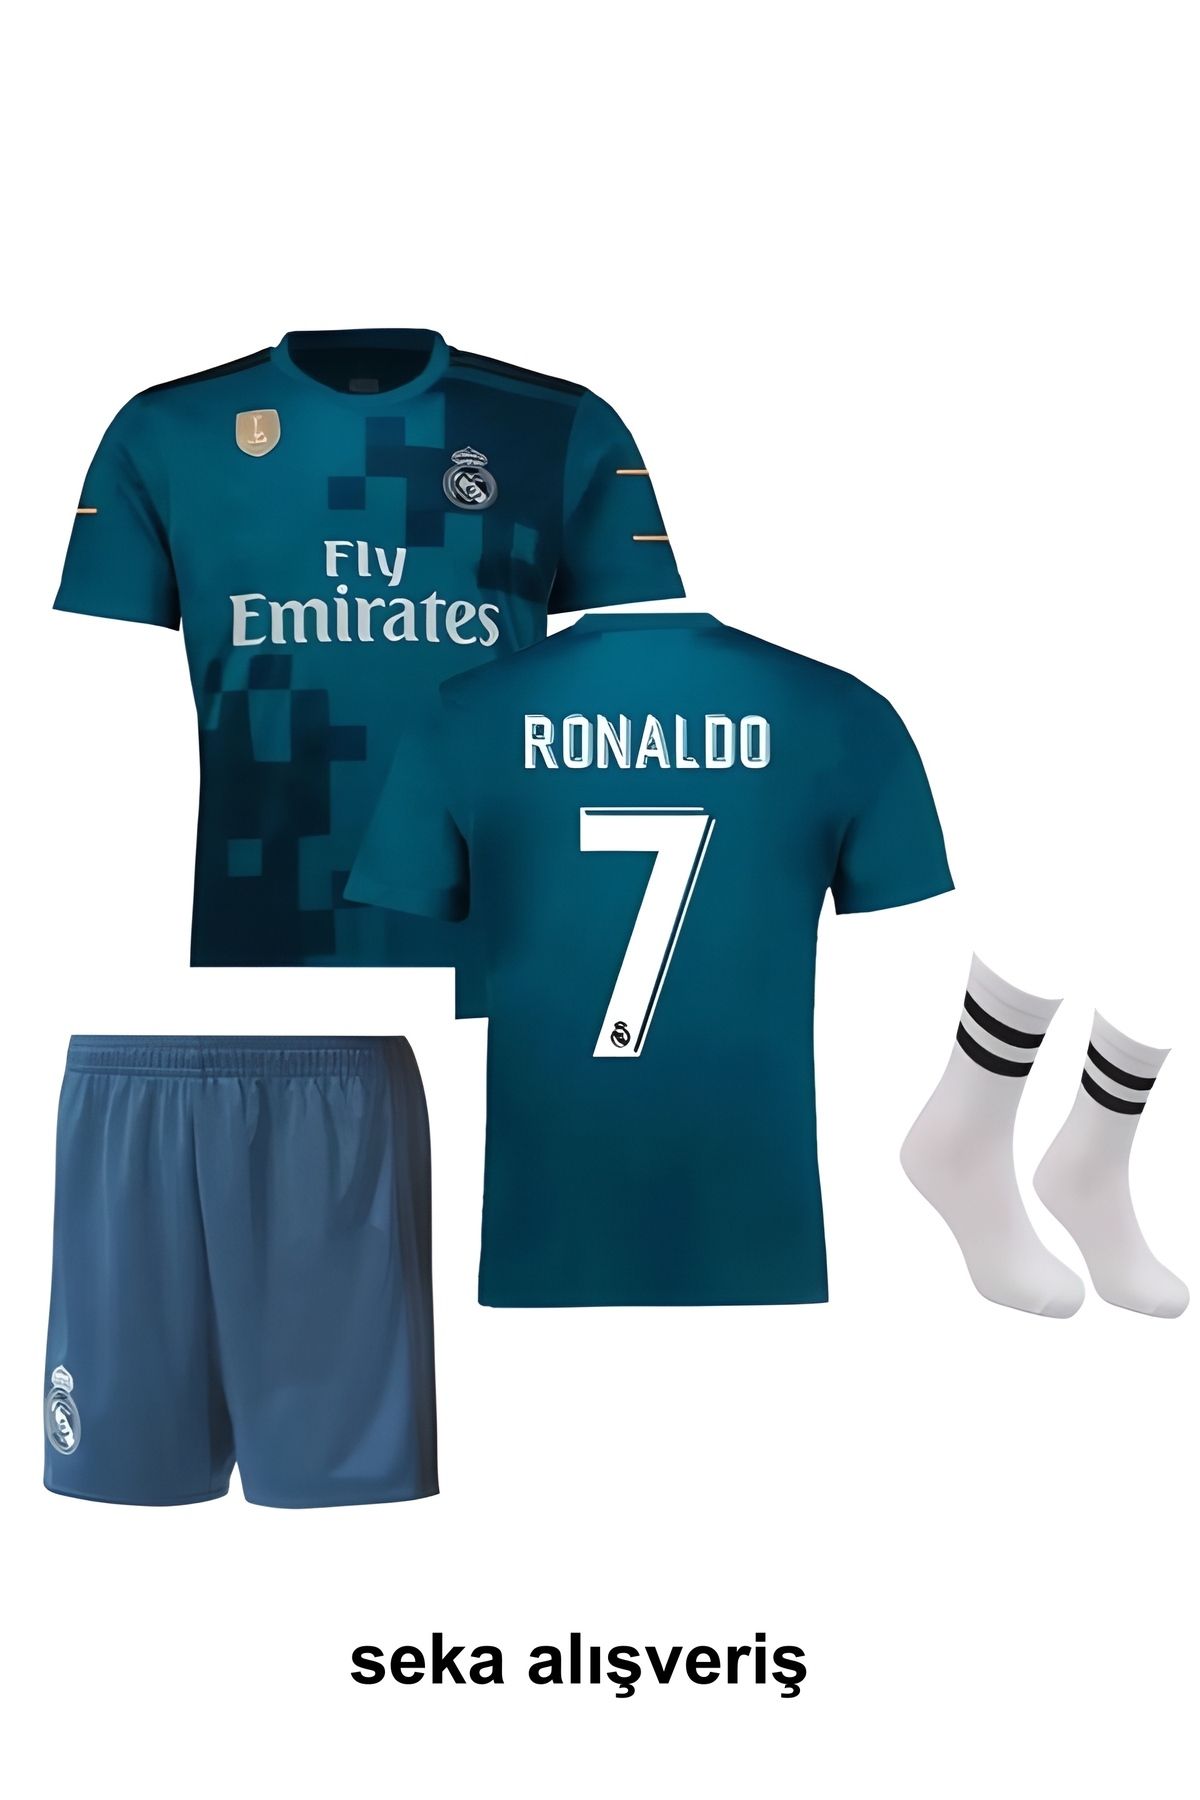 Seka Alışveriş Ronaldo Turkuaz Mavi 2018 Real Madrid Deplasman 3'lü Çoçuk Futbol Forma Seti